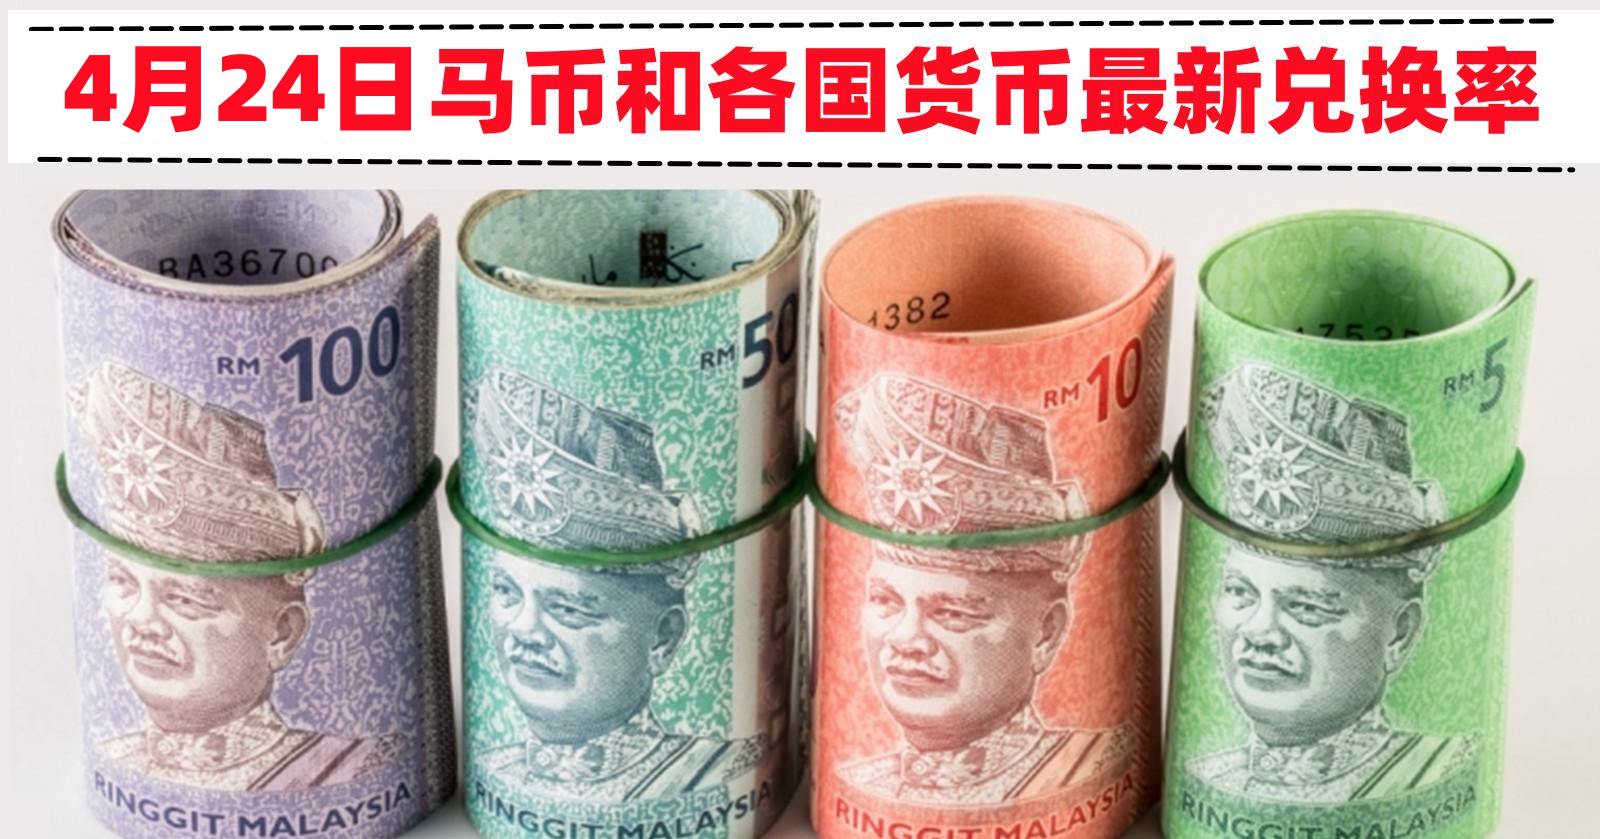 基金经理看好马币人民币 2018年潜能最佳亚洲货币 – 马来西亚头条